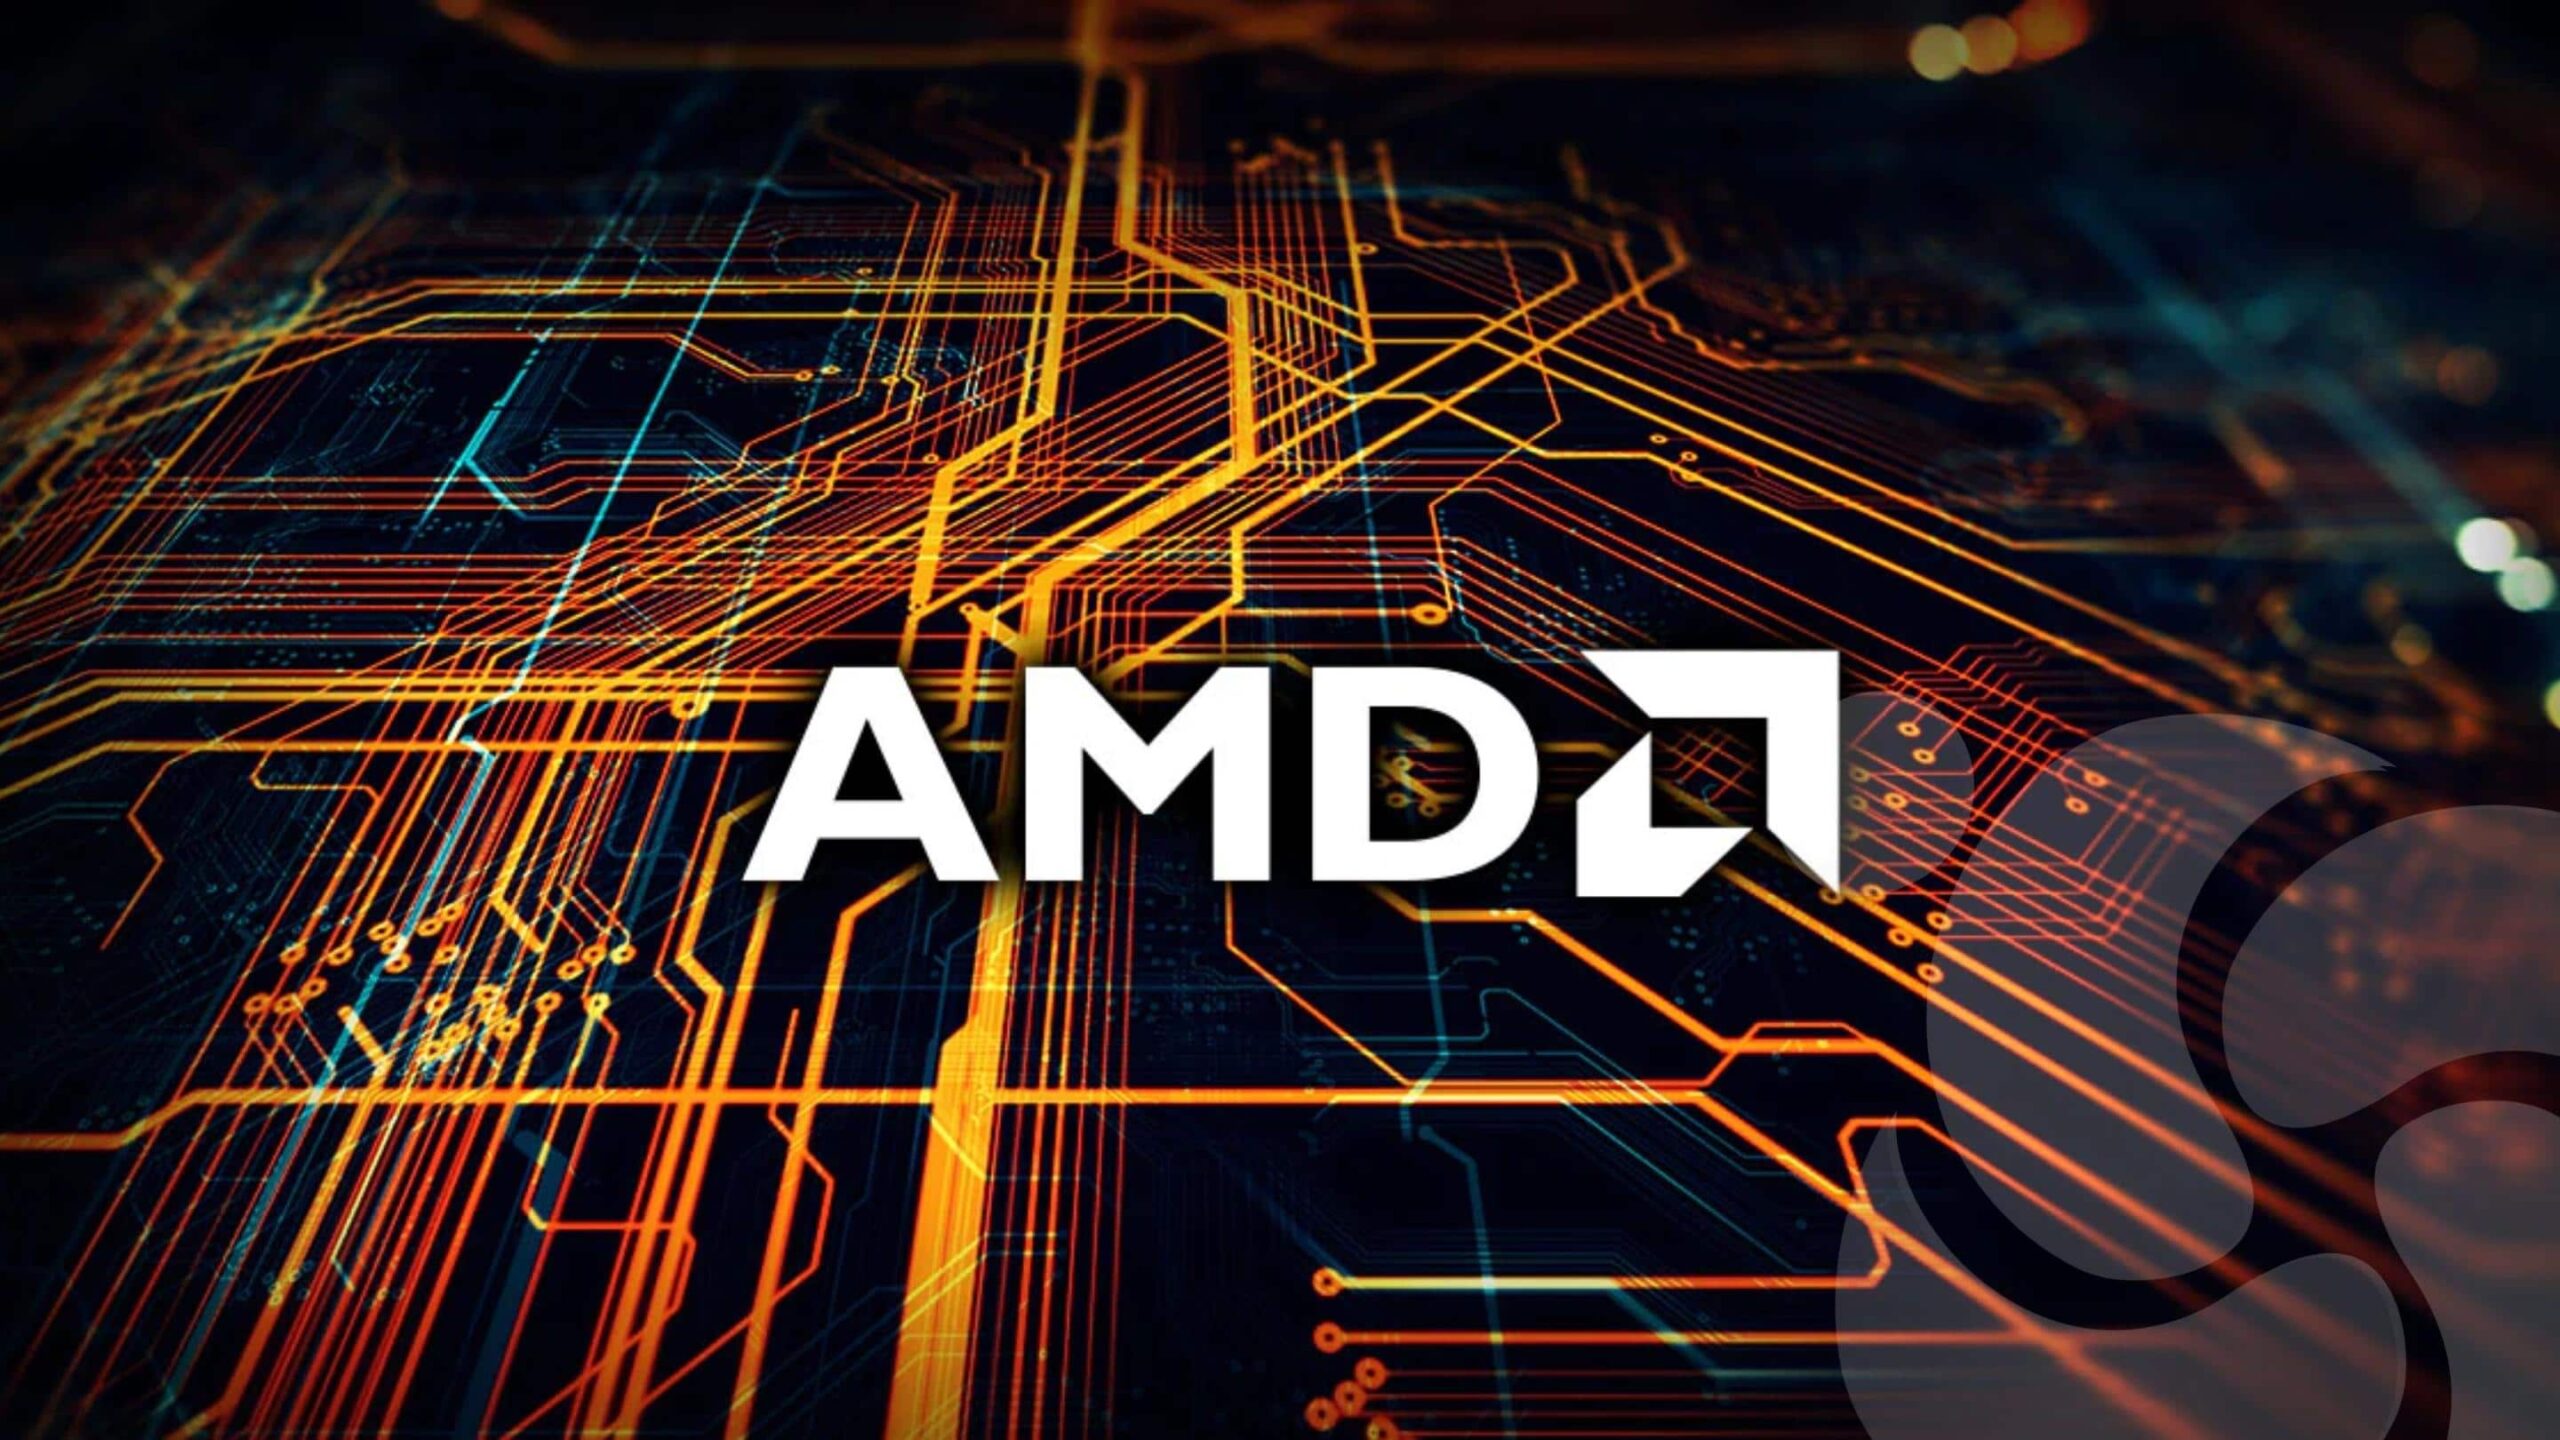 AMD envia patches de driver gráfico para Linux para "GFX 11.5"